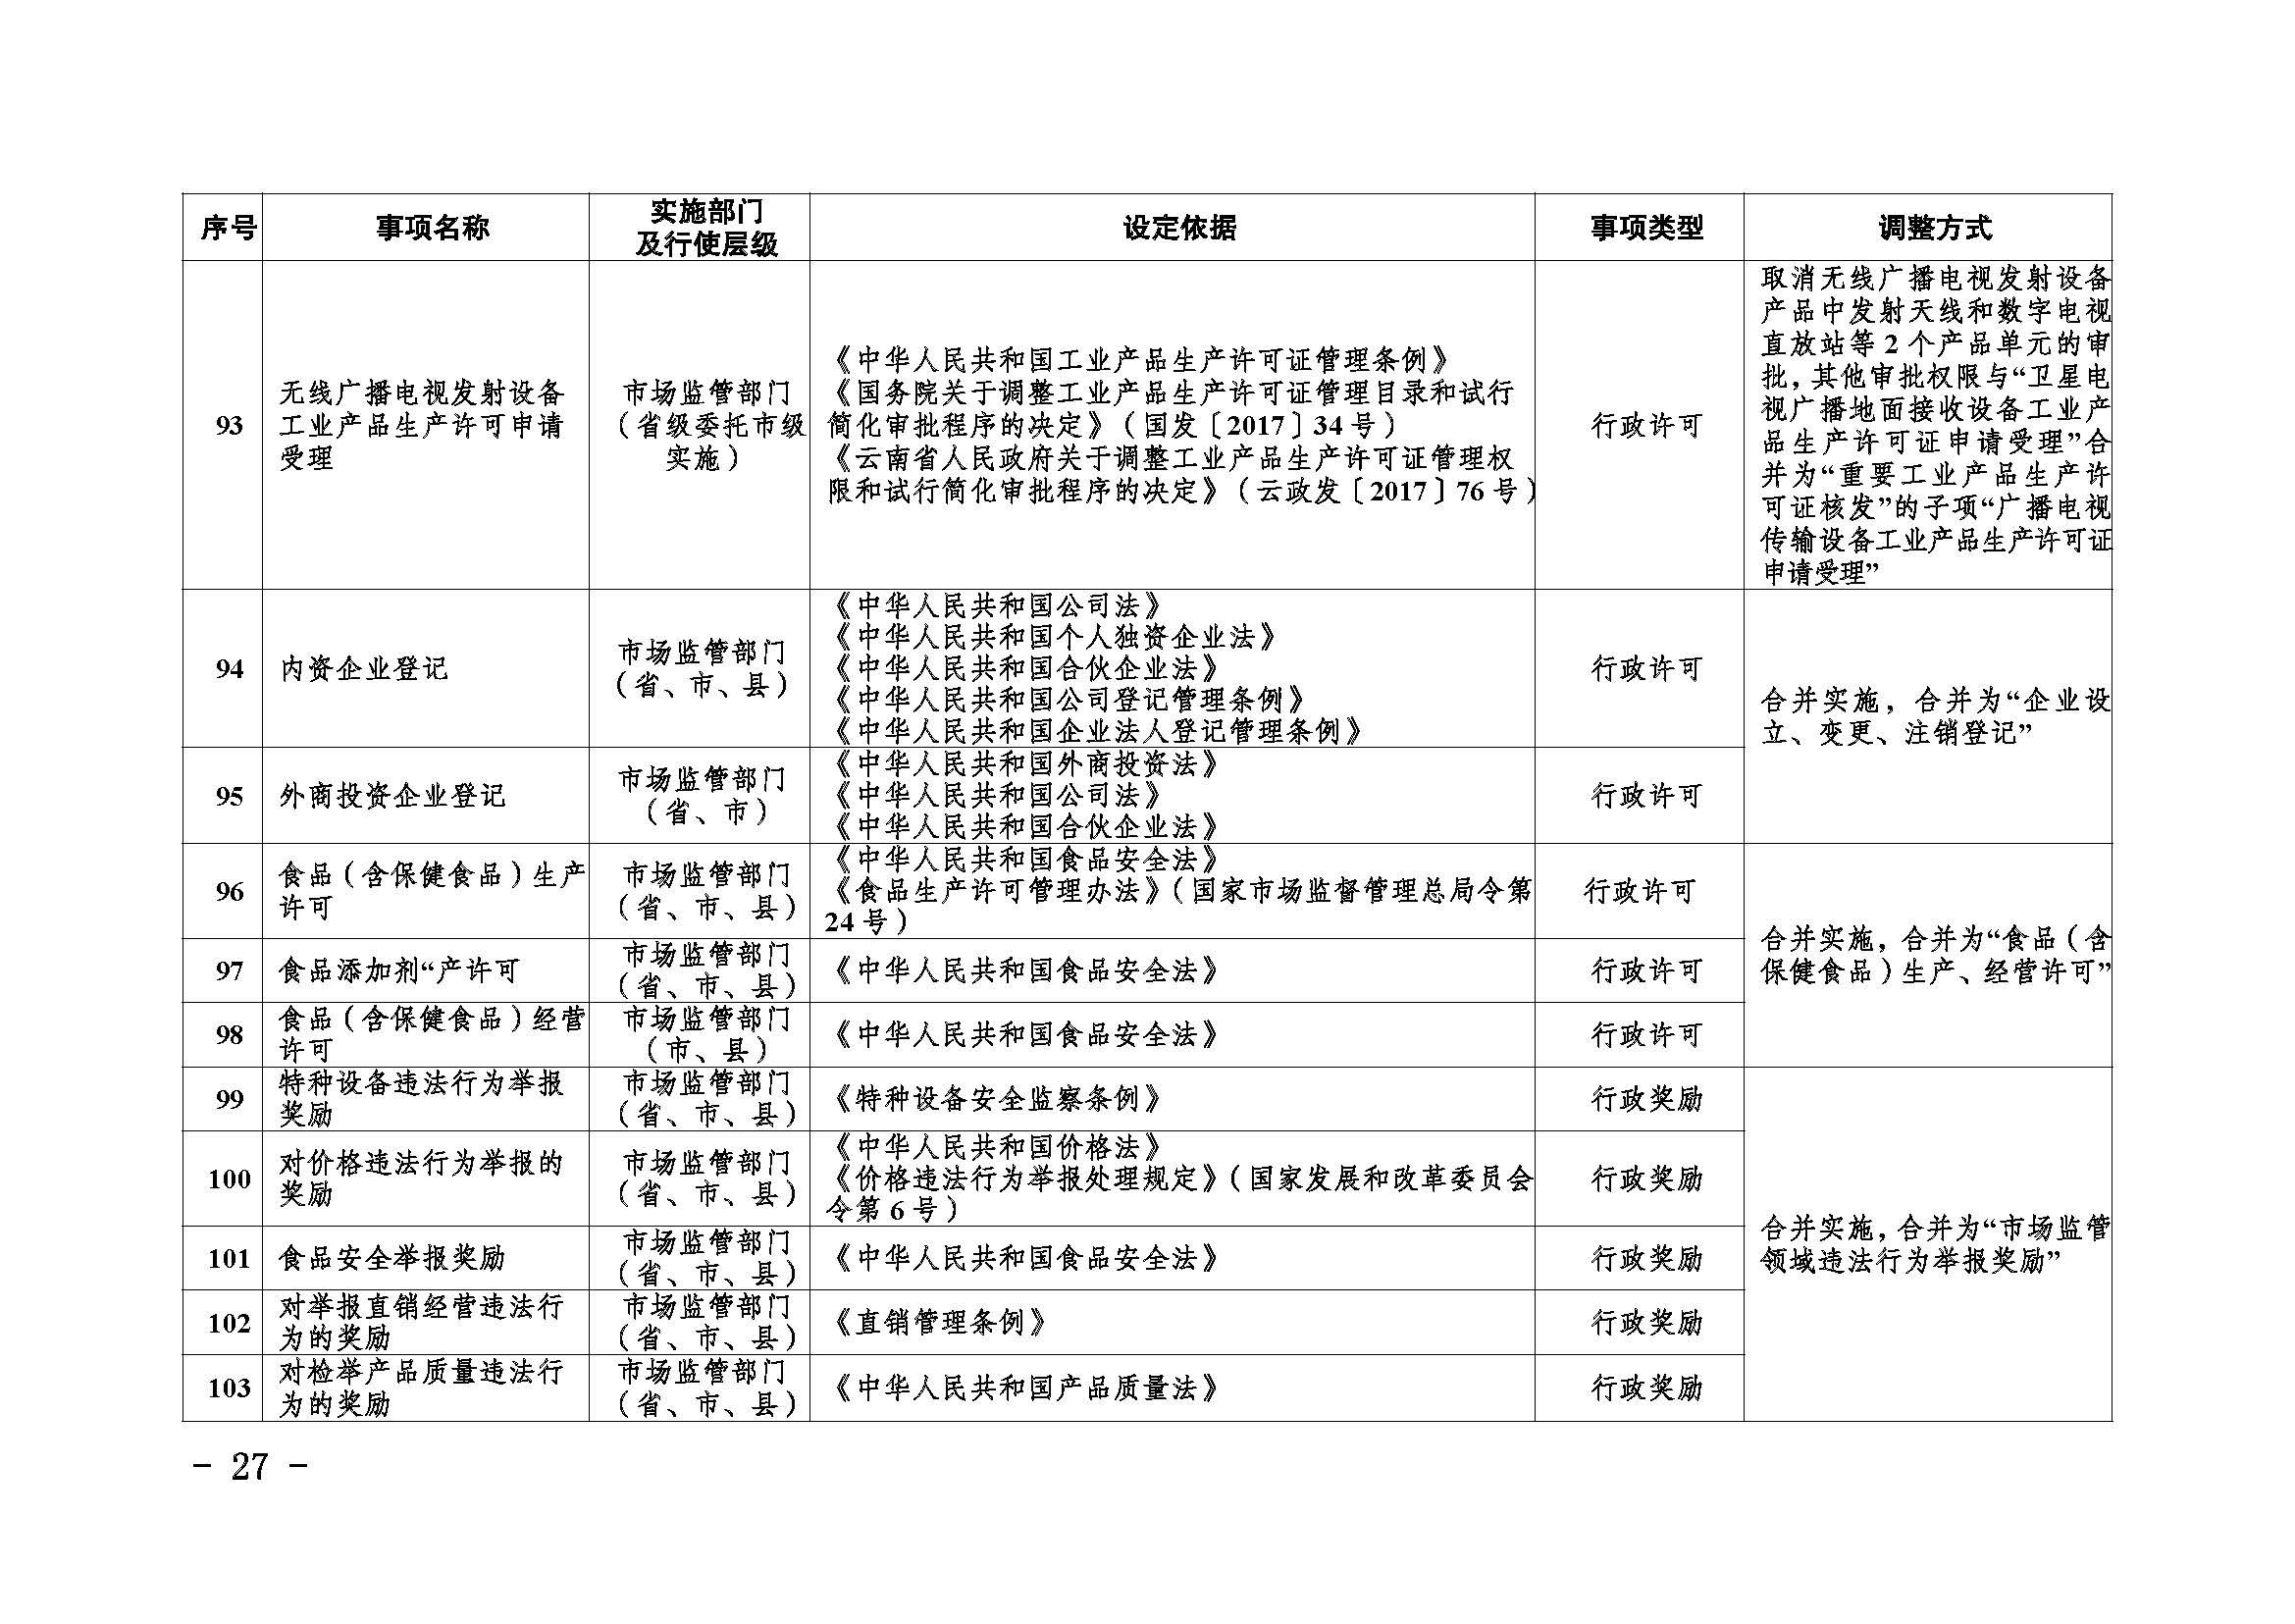 临沧市人民政府办公室关于做好调整370项行政权力事项工作的通知_页面_27